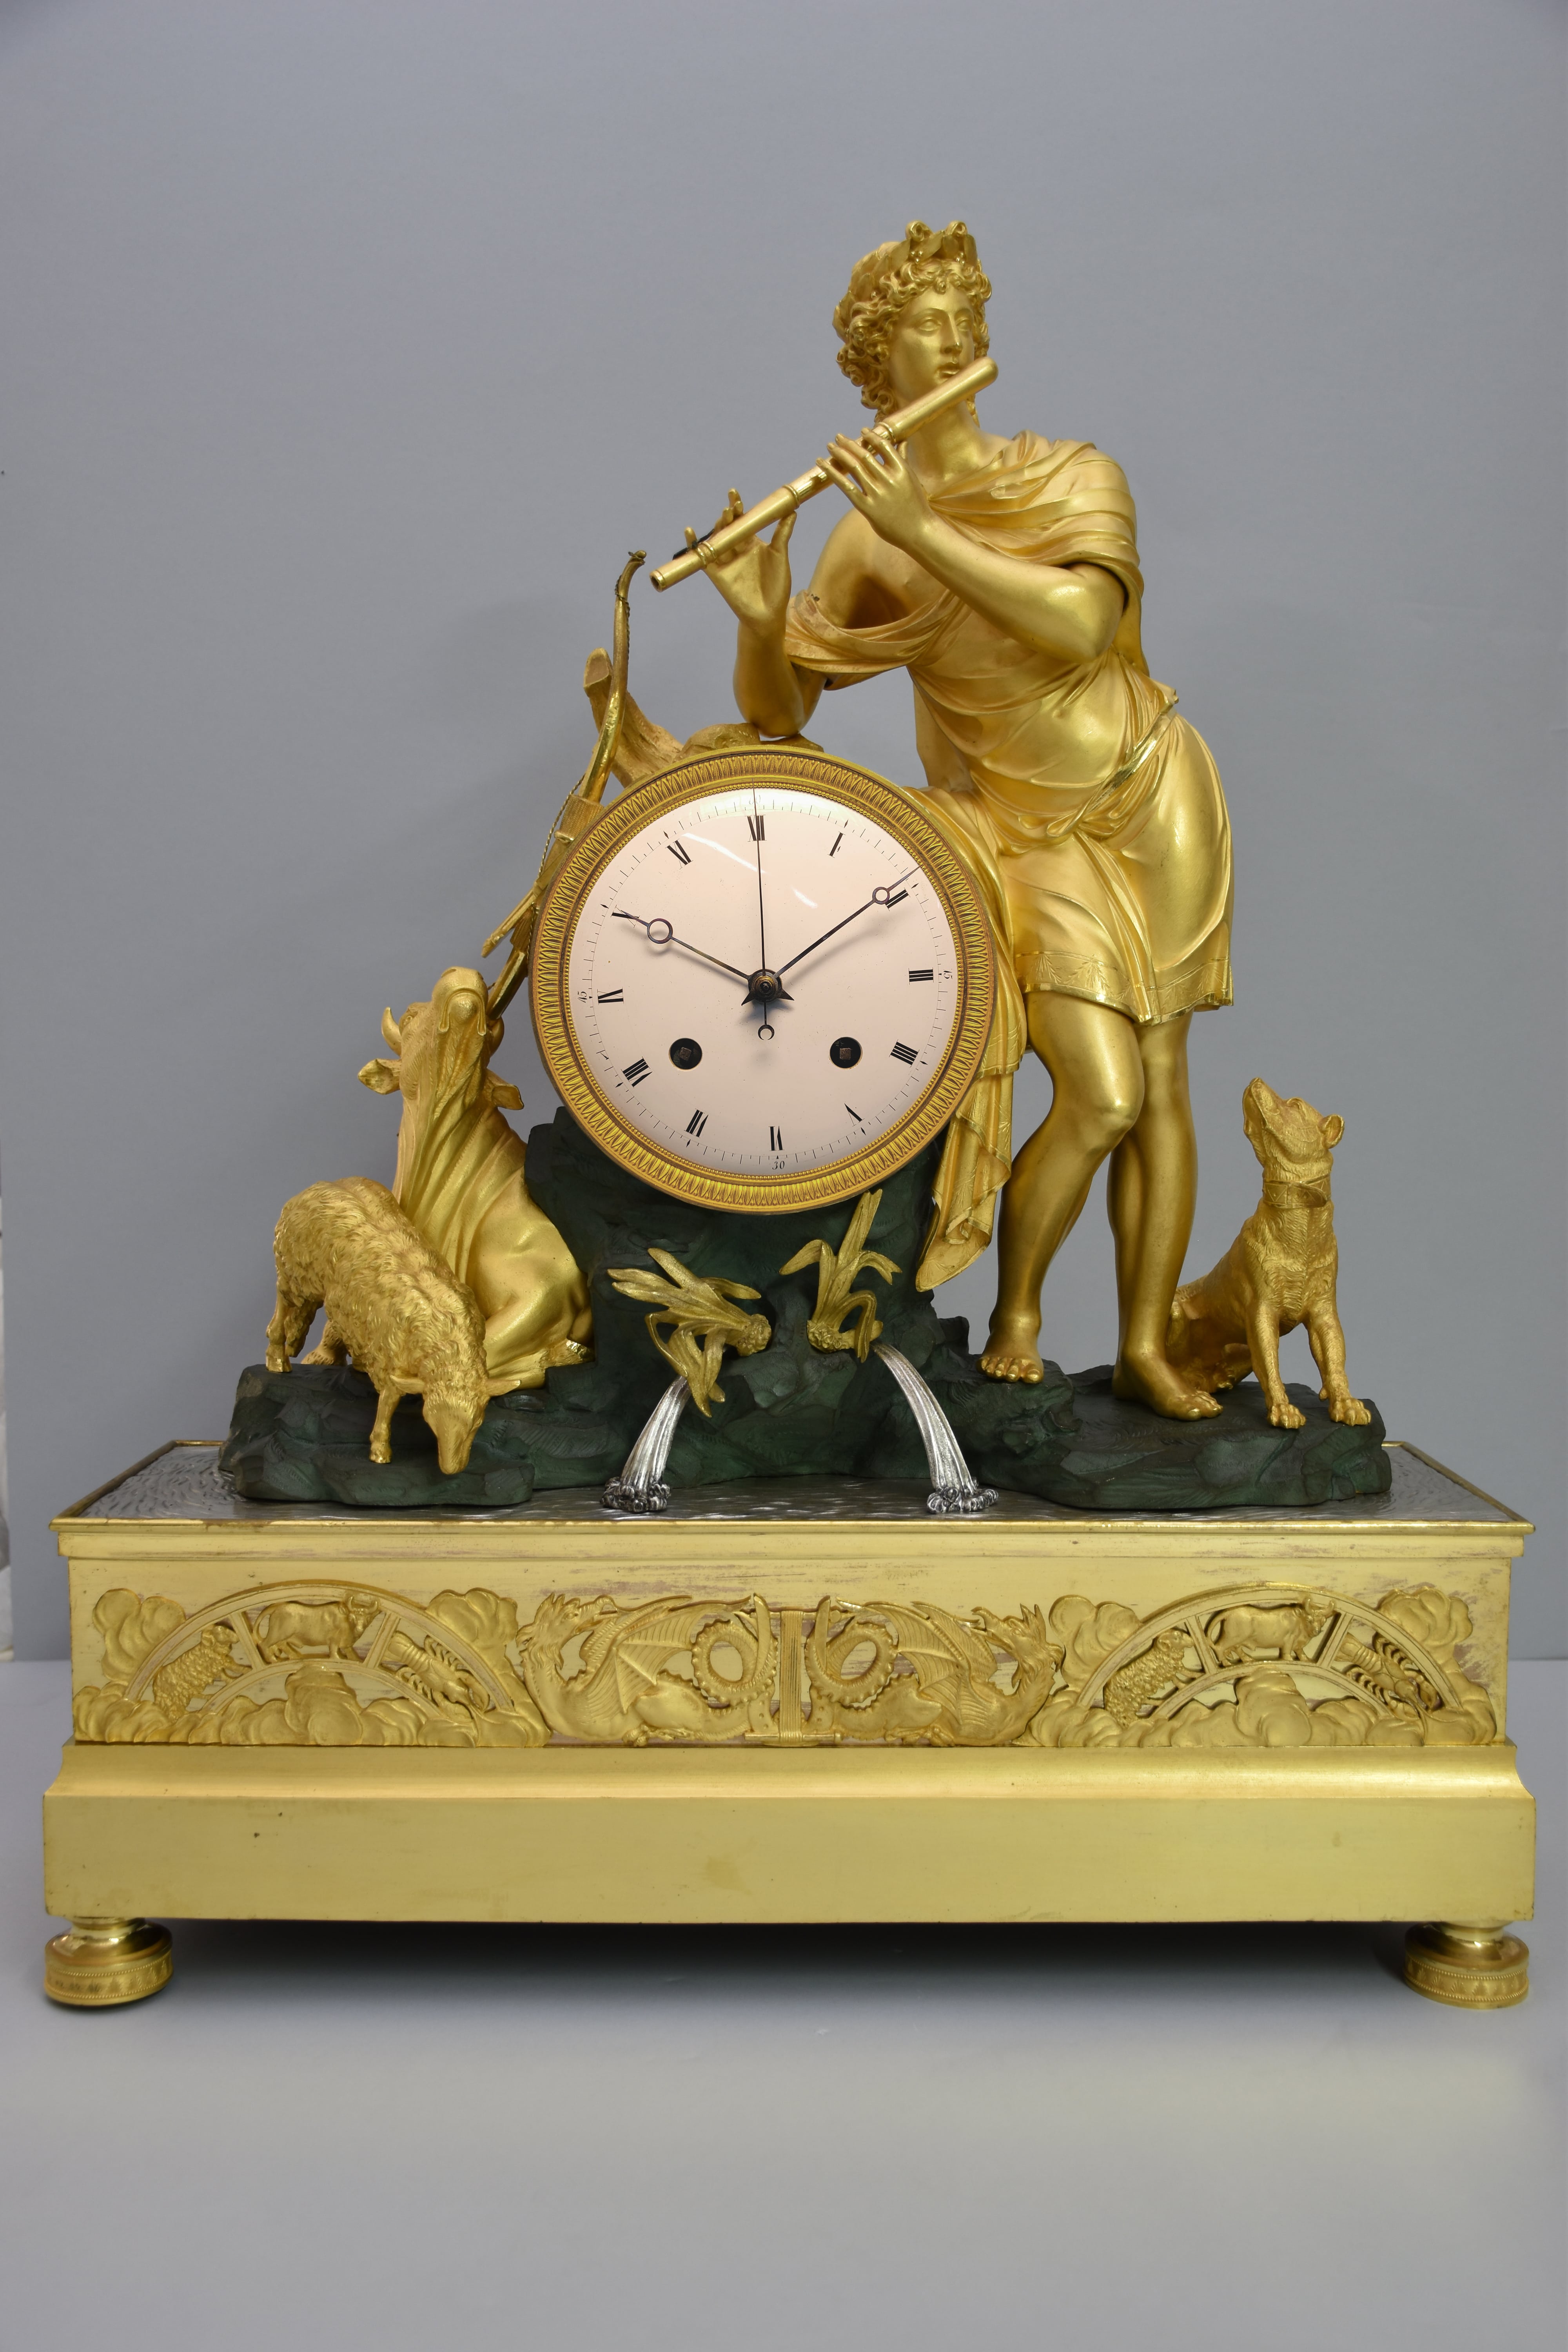 L'orologio dopo il restauro (Fonte foto Firenze Musei)